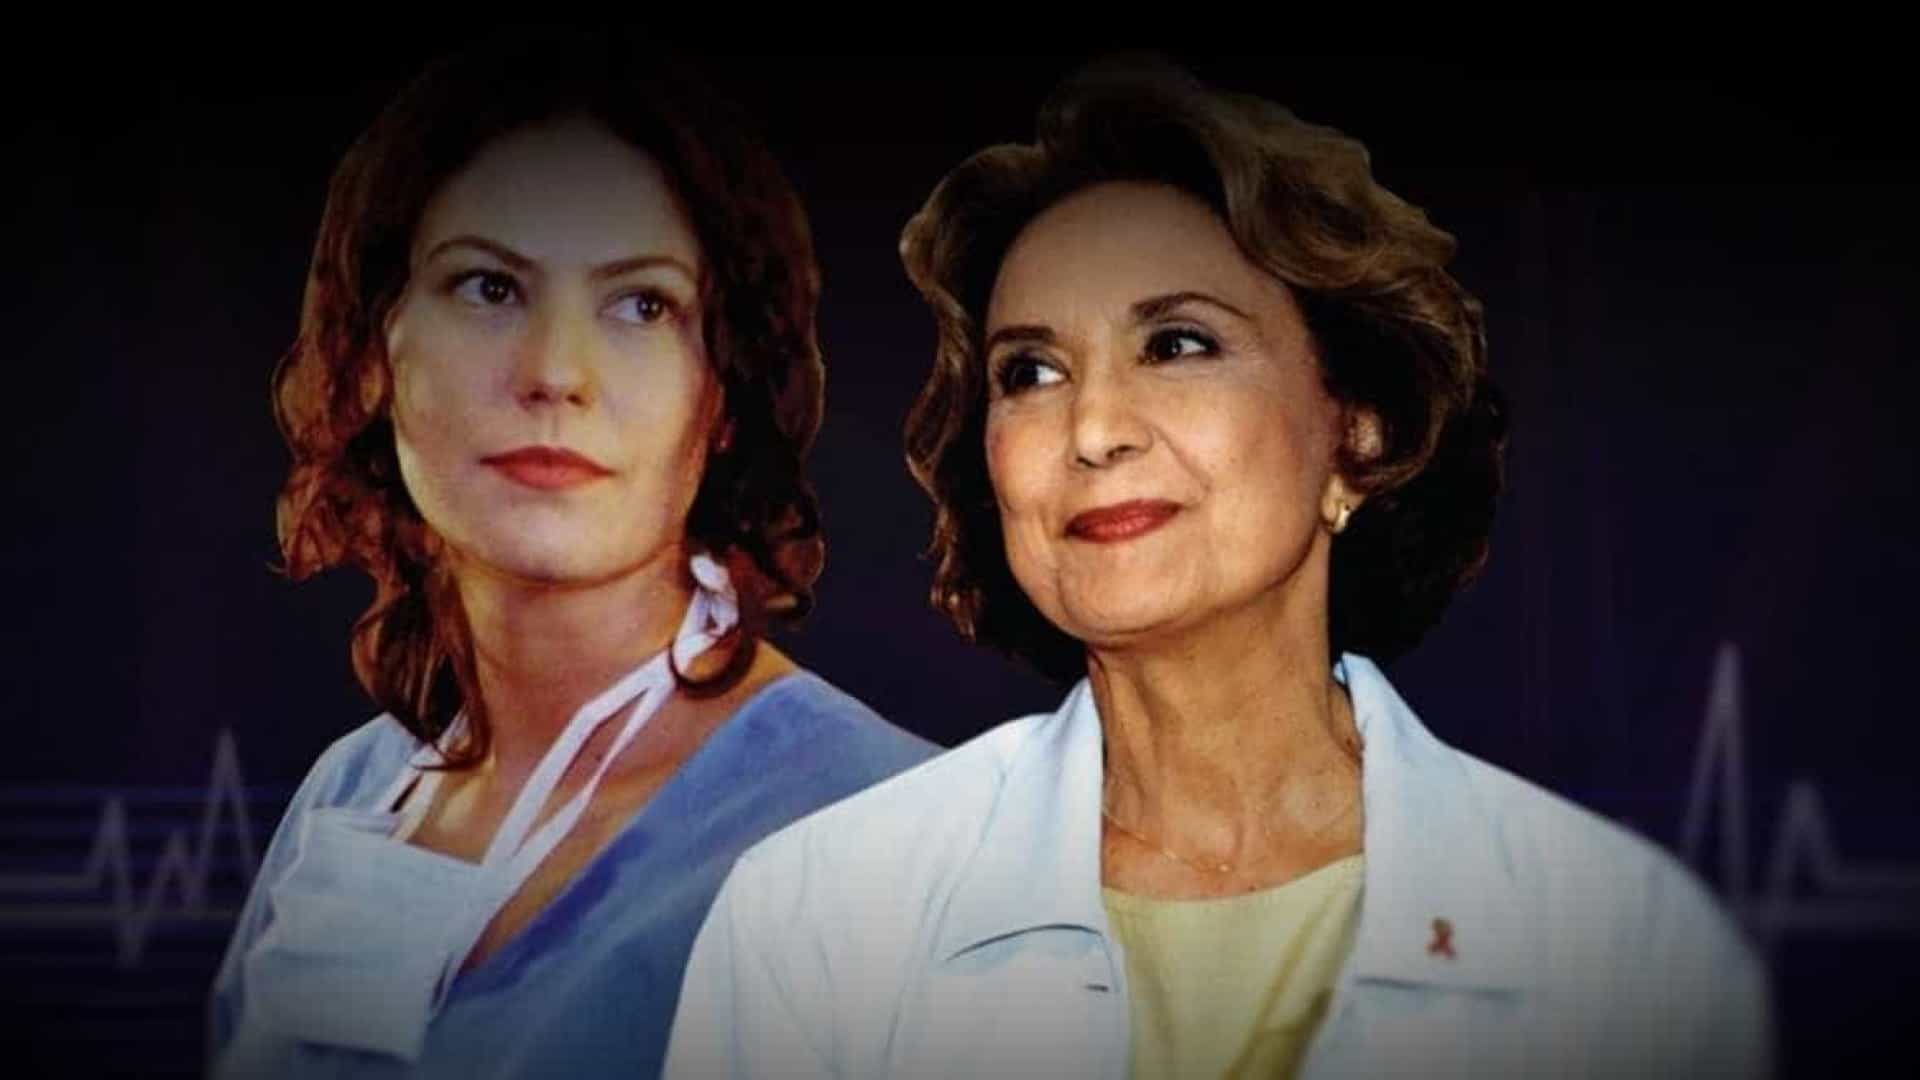 Mulher, série médica brasileira com Patrícia Pillar e Eva Wilma, ganhará reexibição no canal Viva